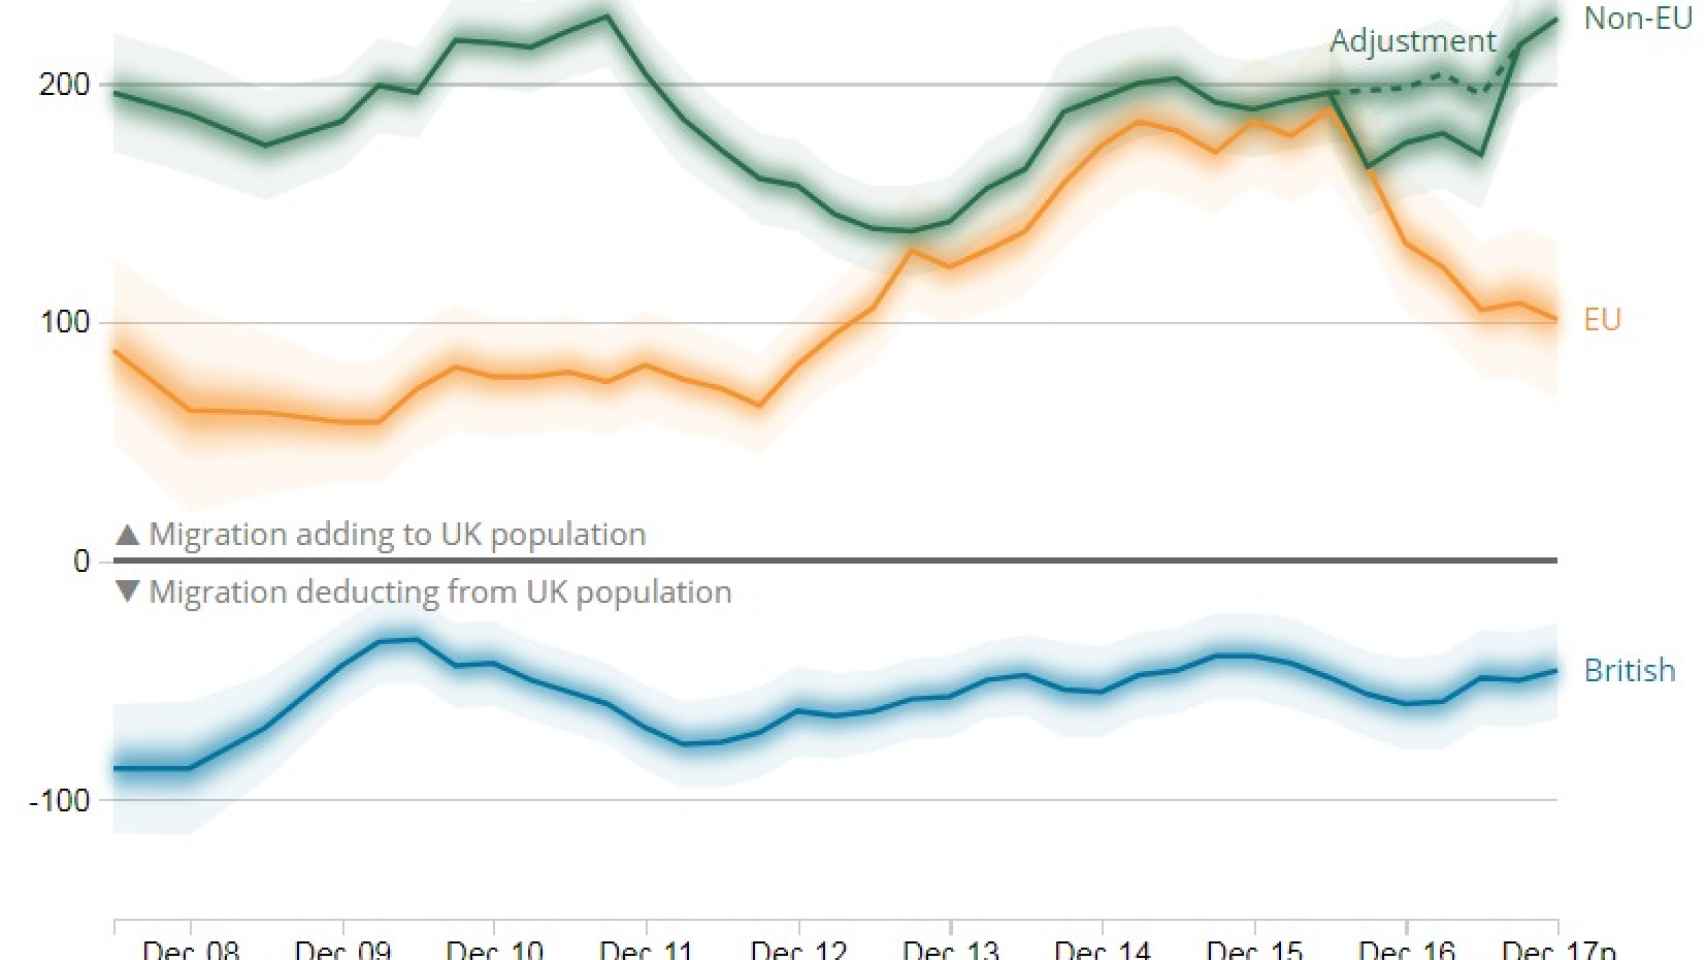 Migración de largo plazo al Reino Unido 2008-2017 (en miles)